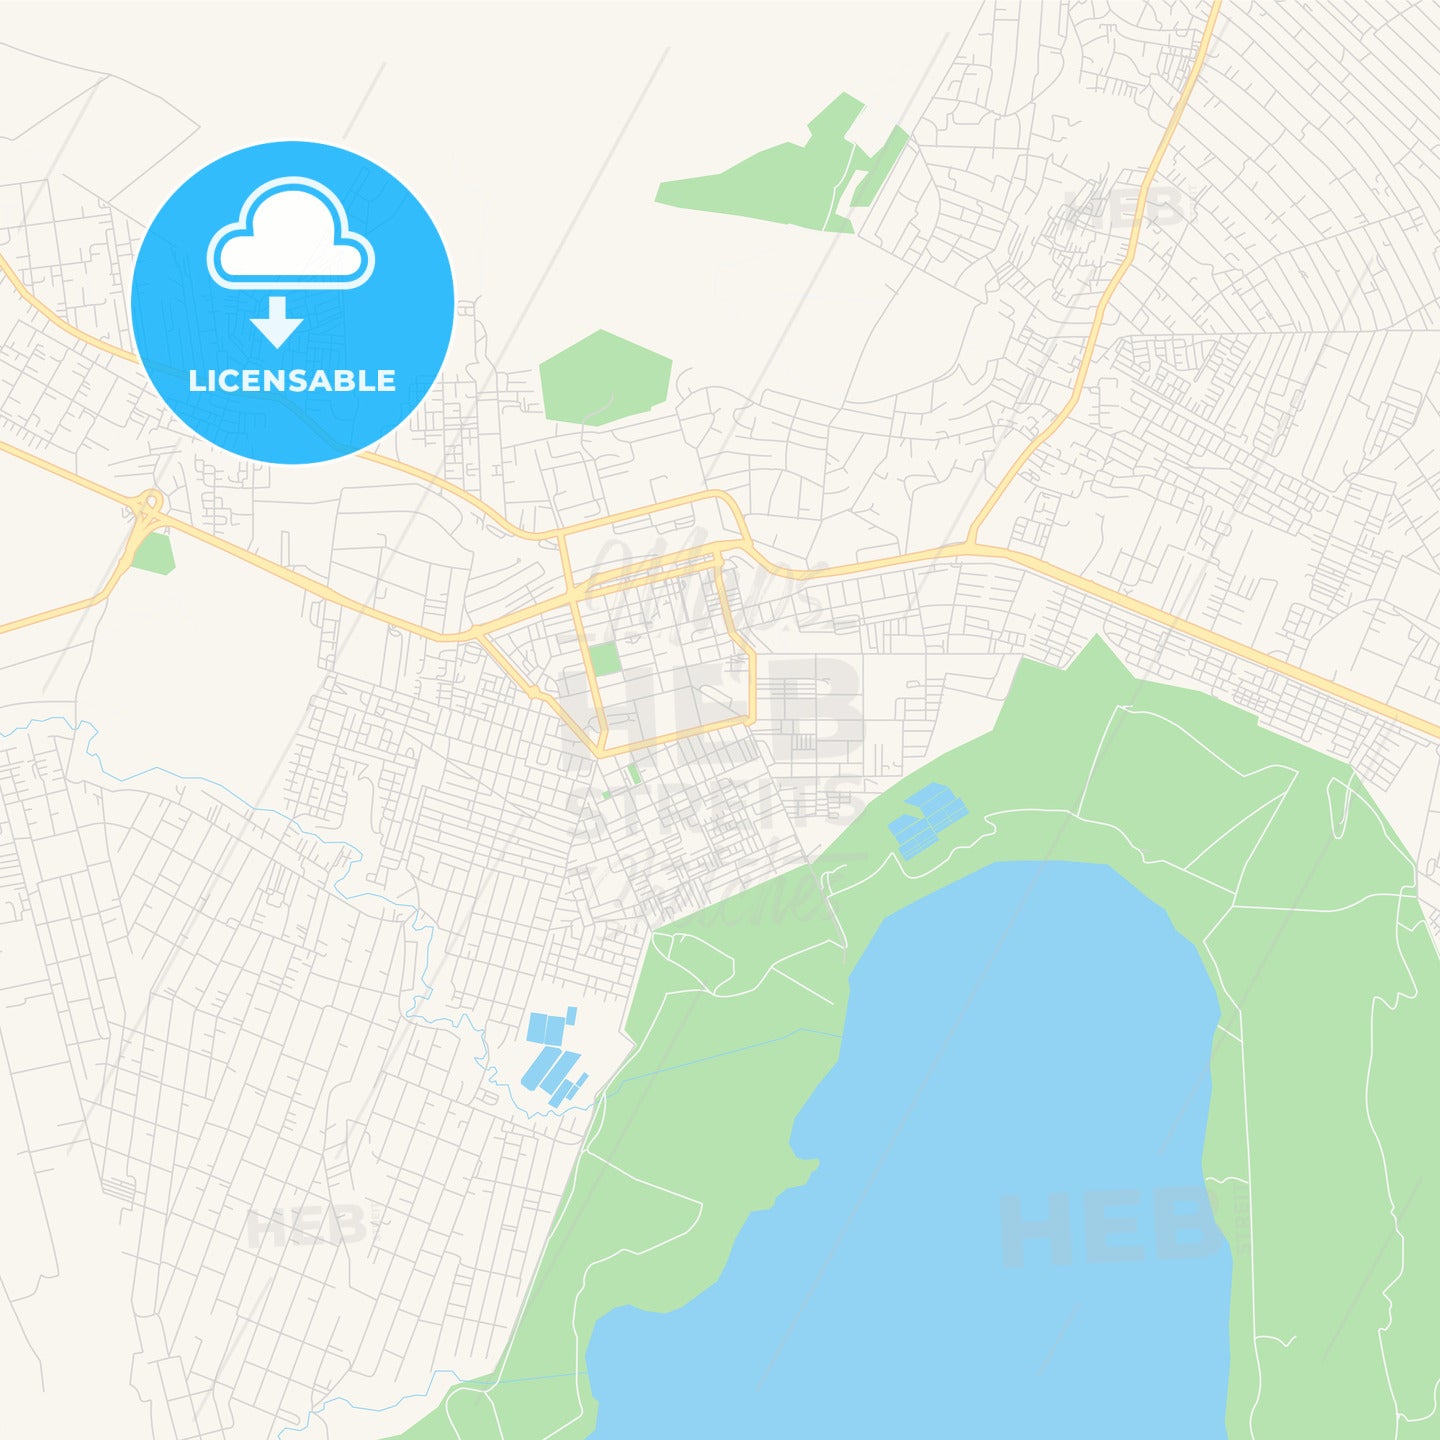 Printable street map of Nakuru, Kenya